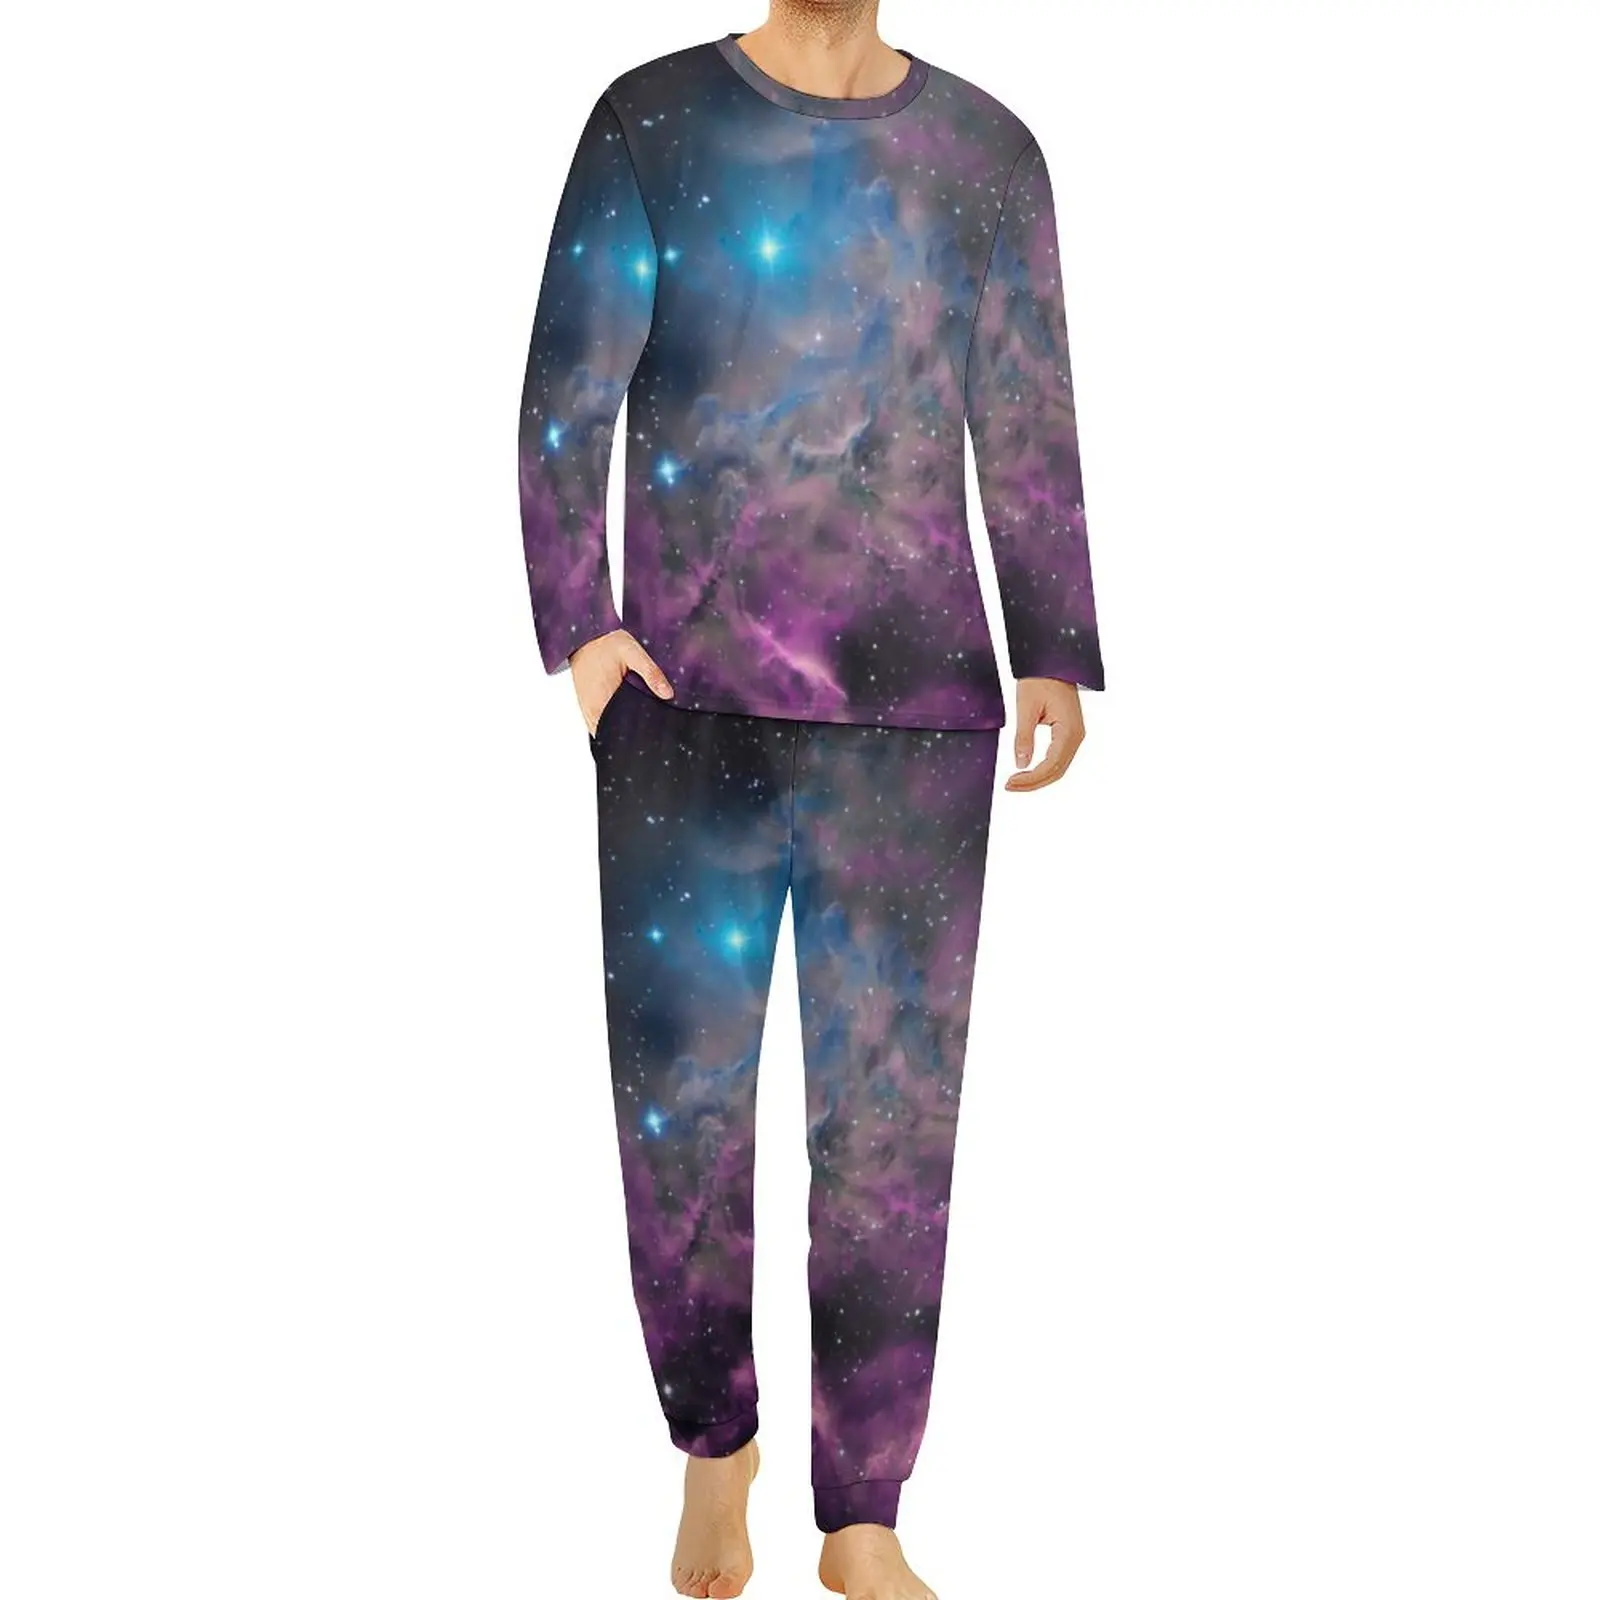 

Cloud Galaxy Pajamas Flaming Star Nebula Man Long Sleeve Trendy Pajamas Set 2 Pieces Casual Graphic Nightwear Birthday Gift